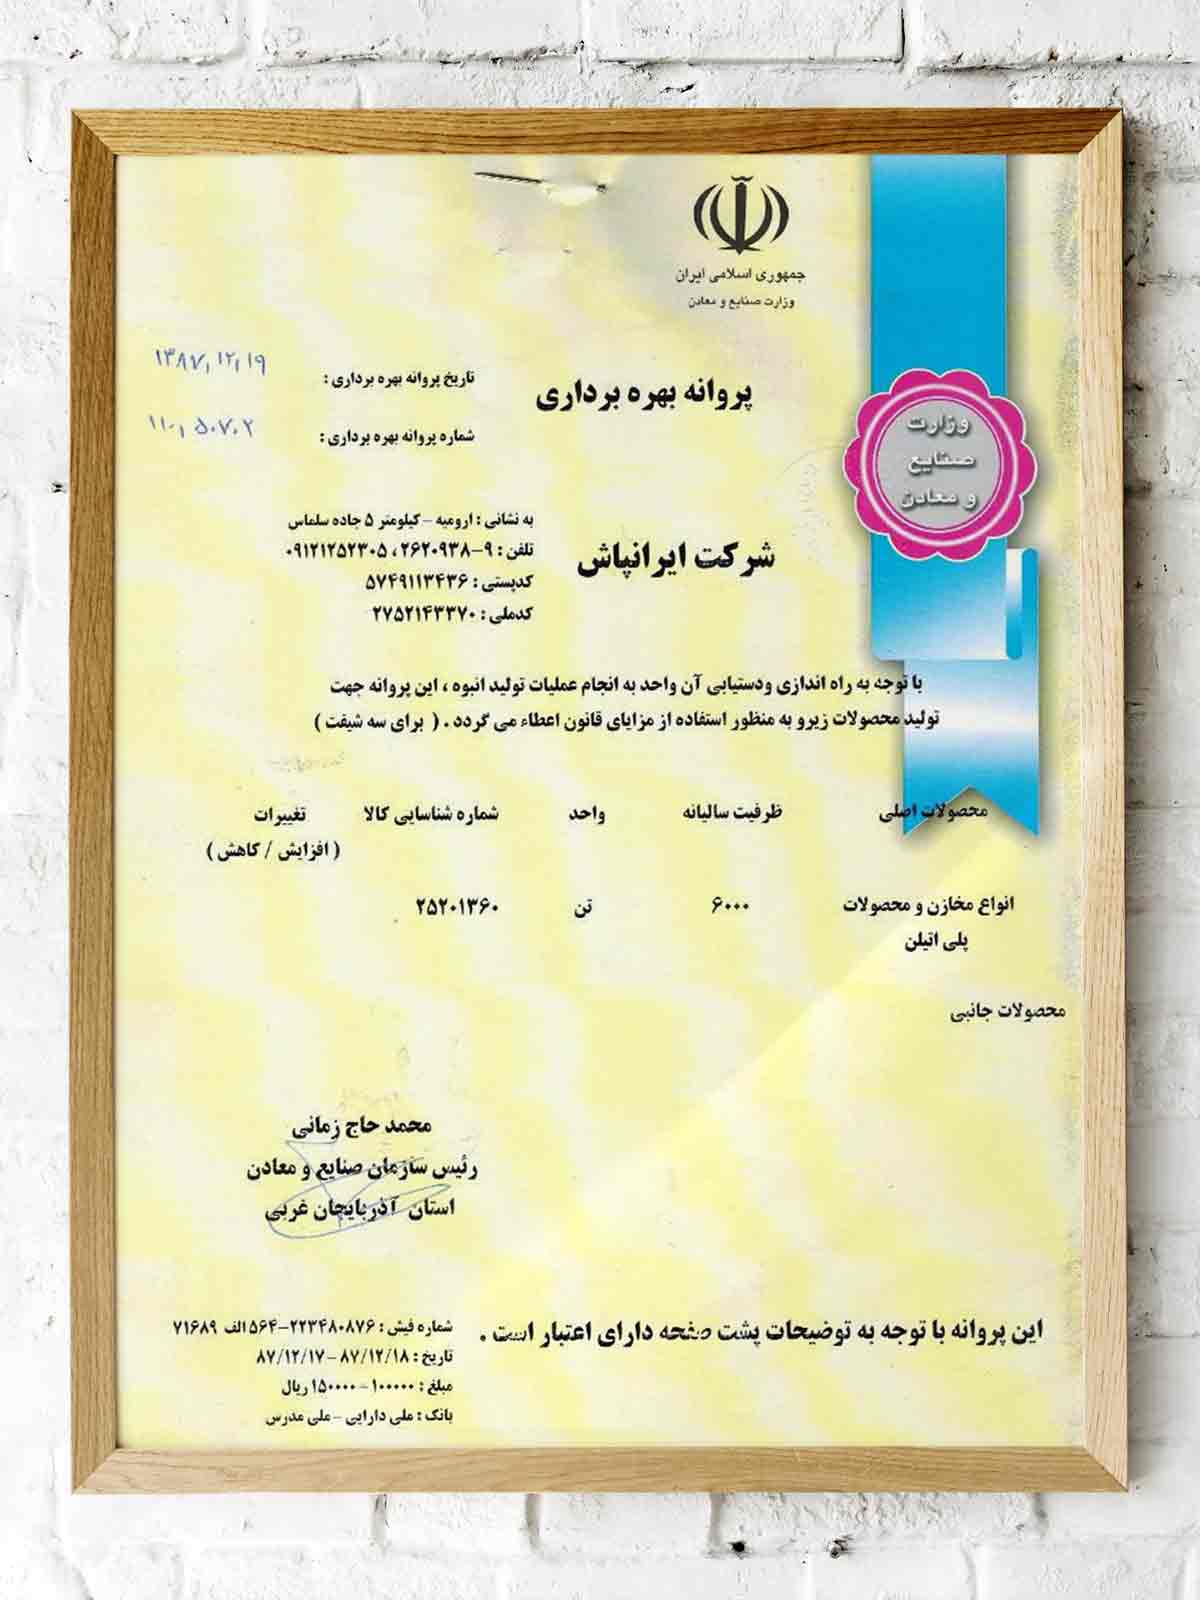 IranPash Certificate